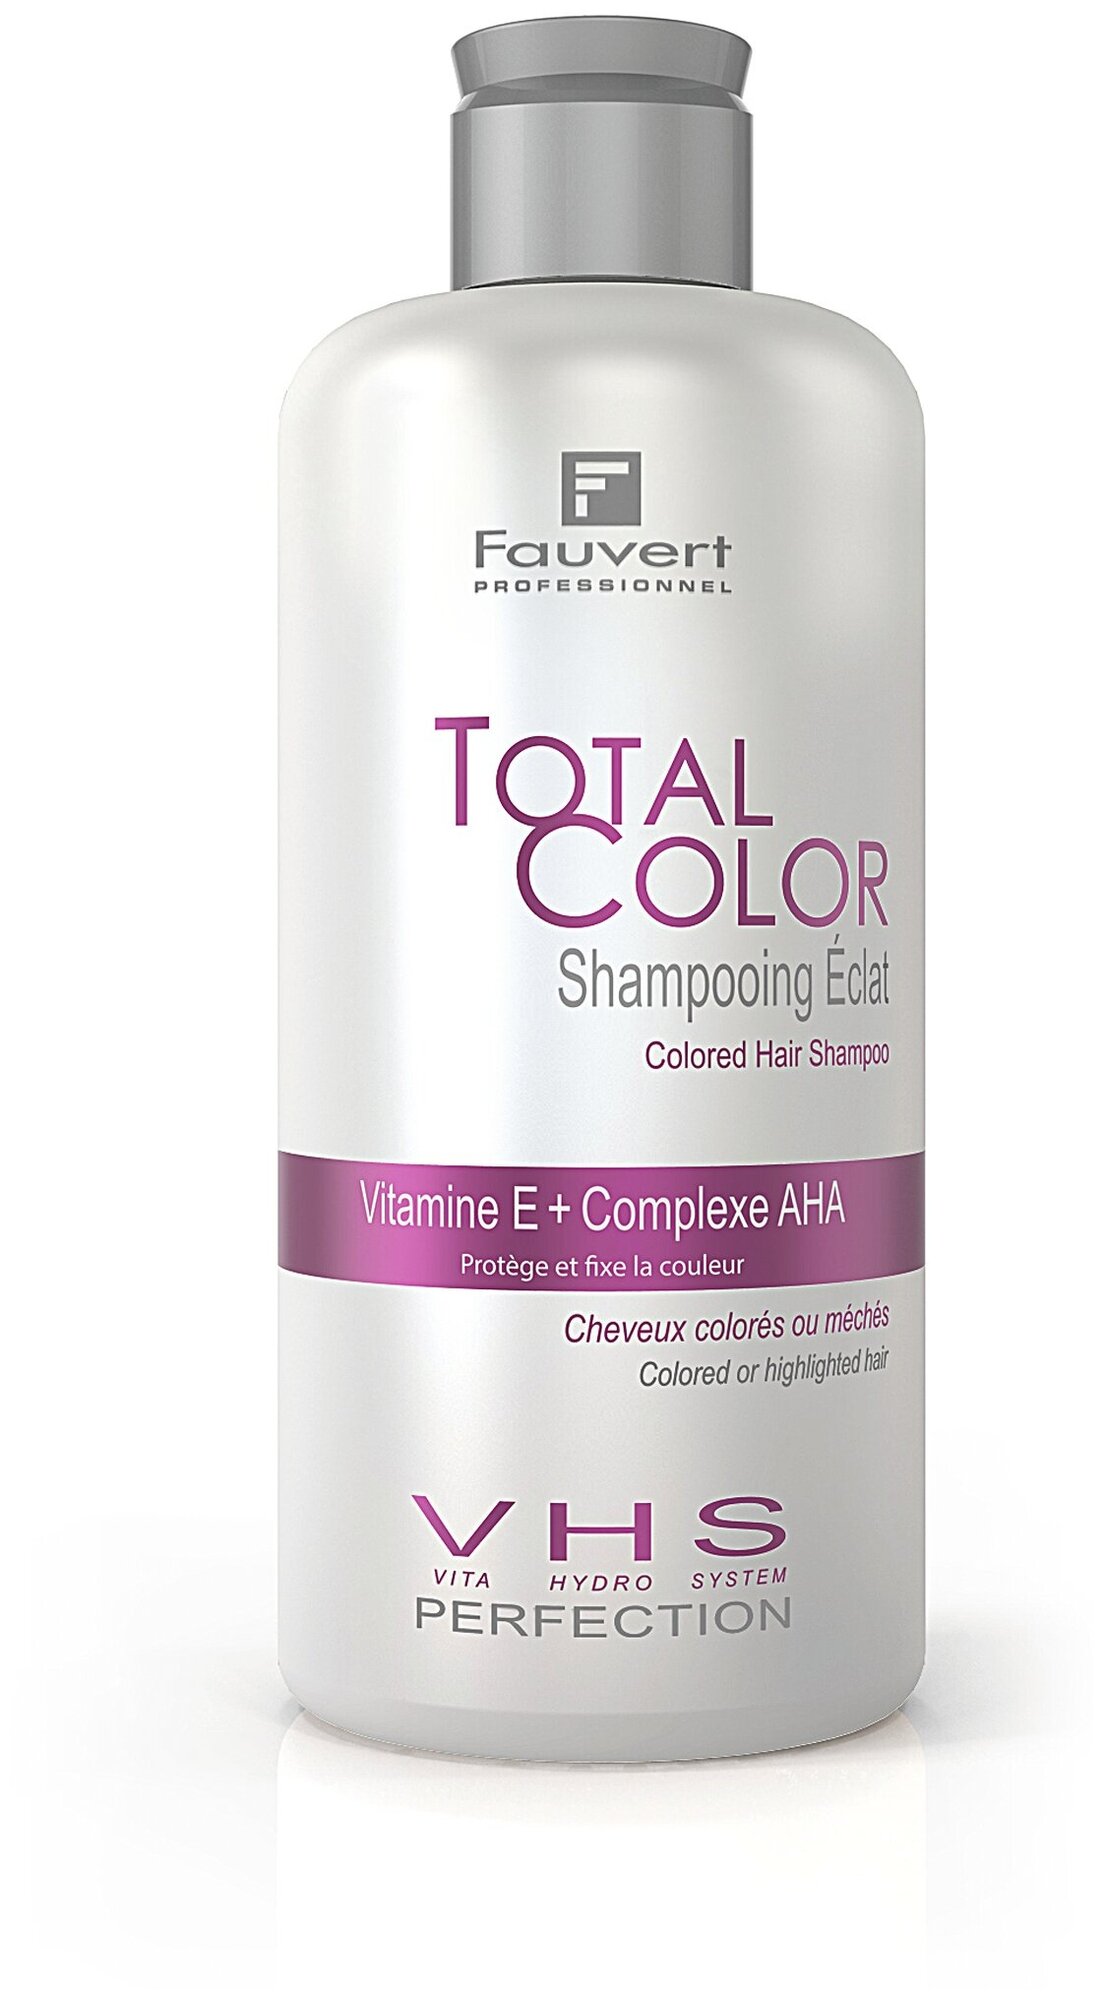 Шампунь для сохранения цвета и блеска окрашенных волос, VITA HYDRO SYSTEM, FAUVERT, 250 мл.